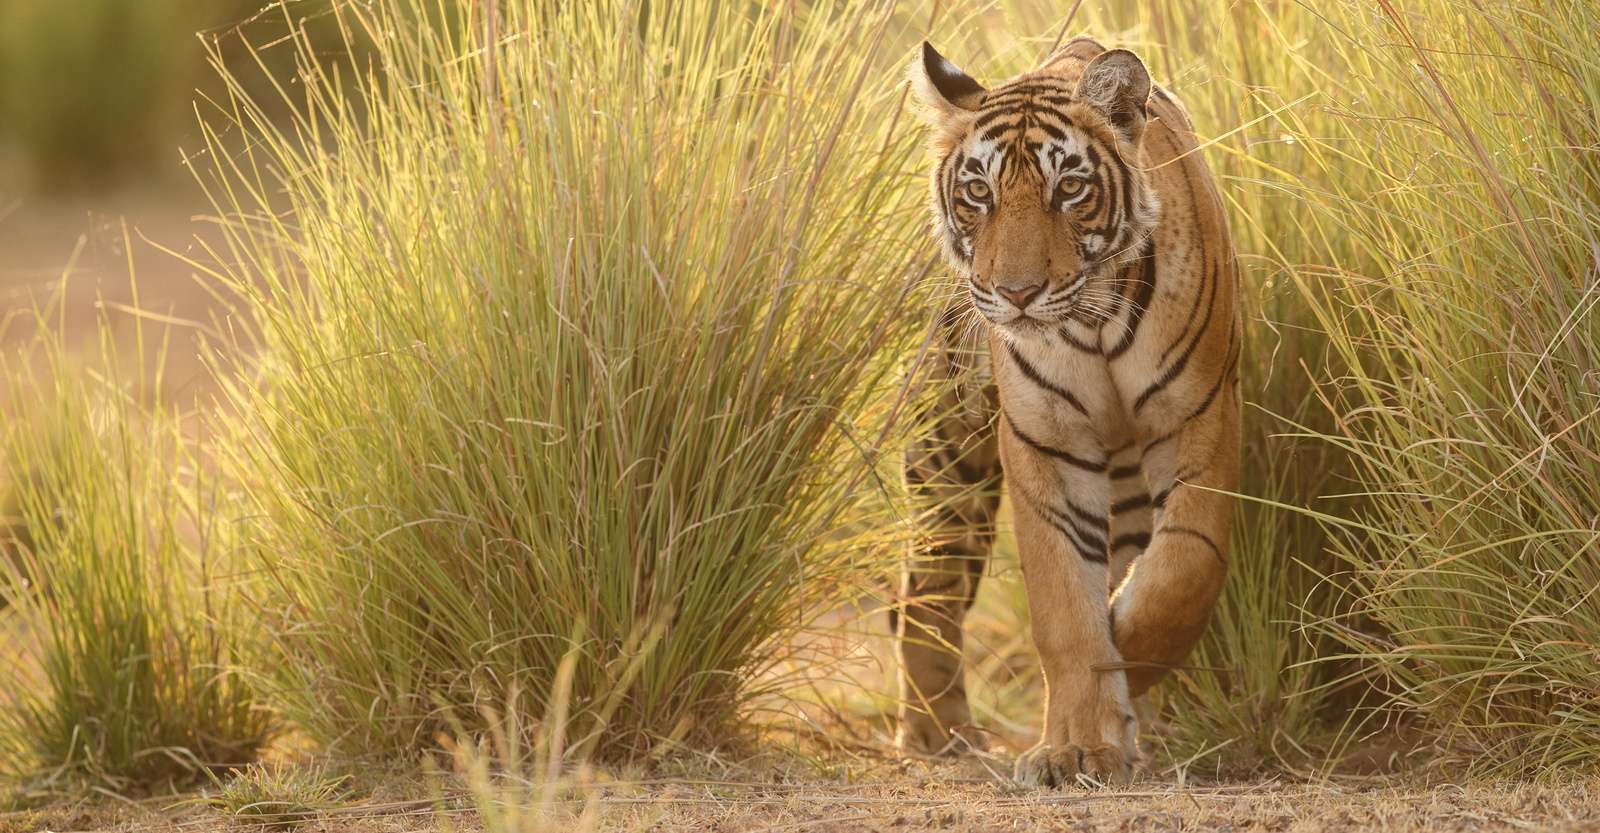 Bengal tiger, India.